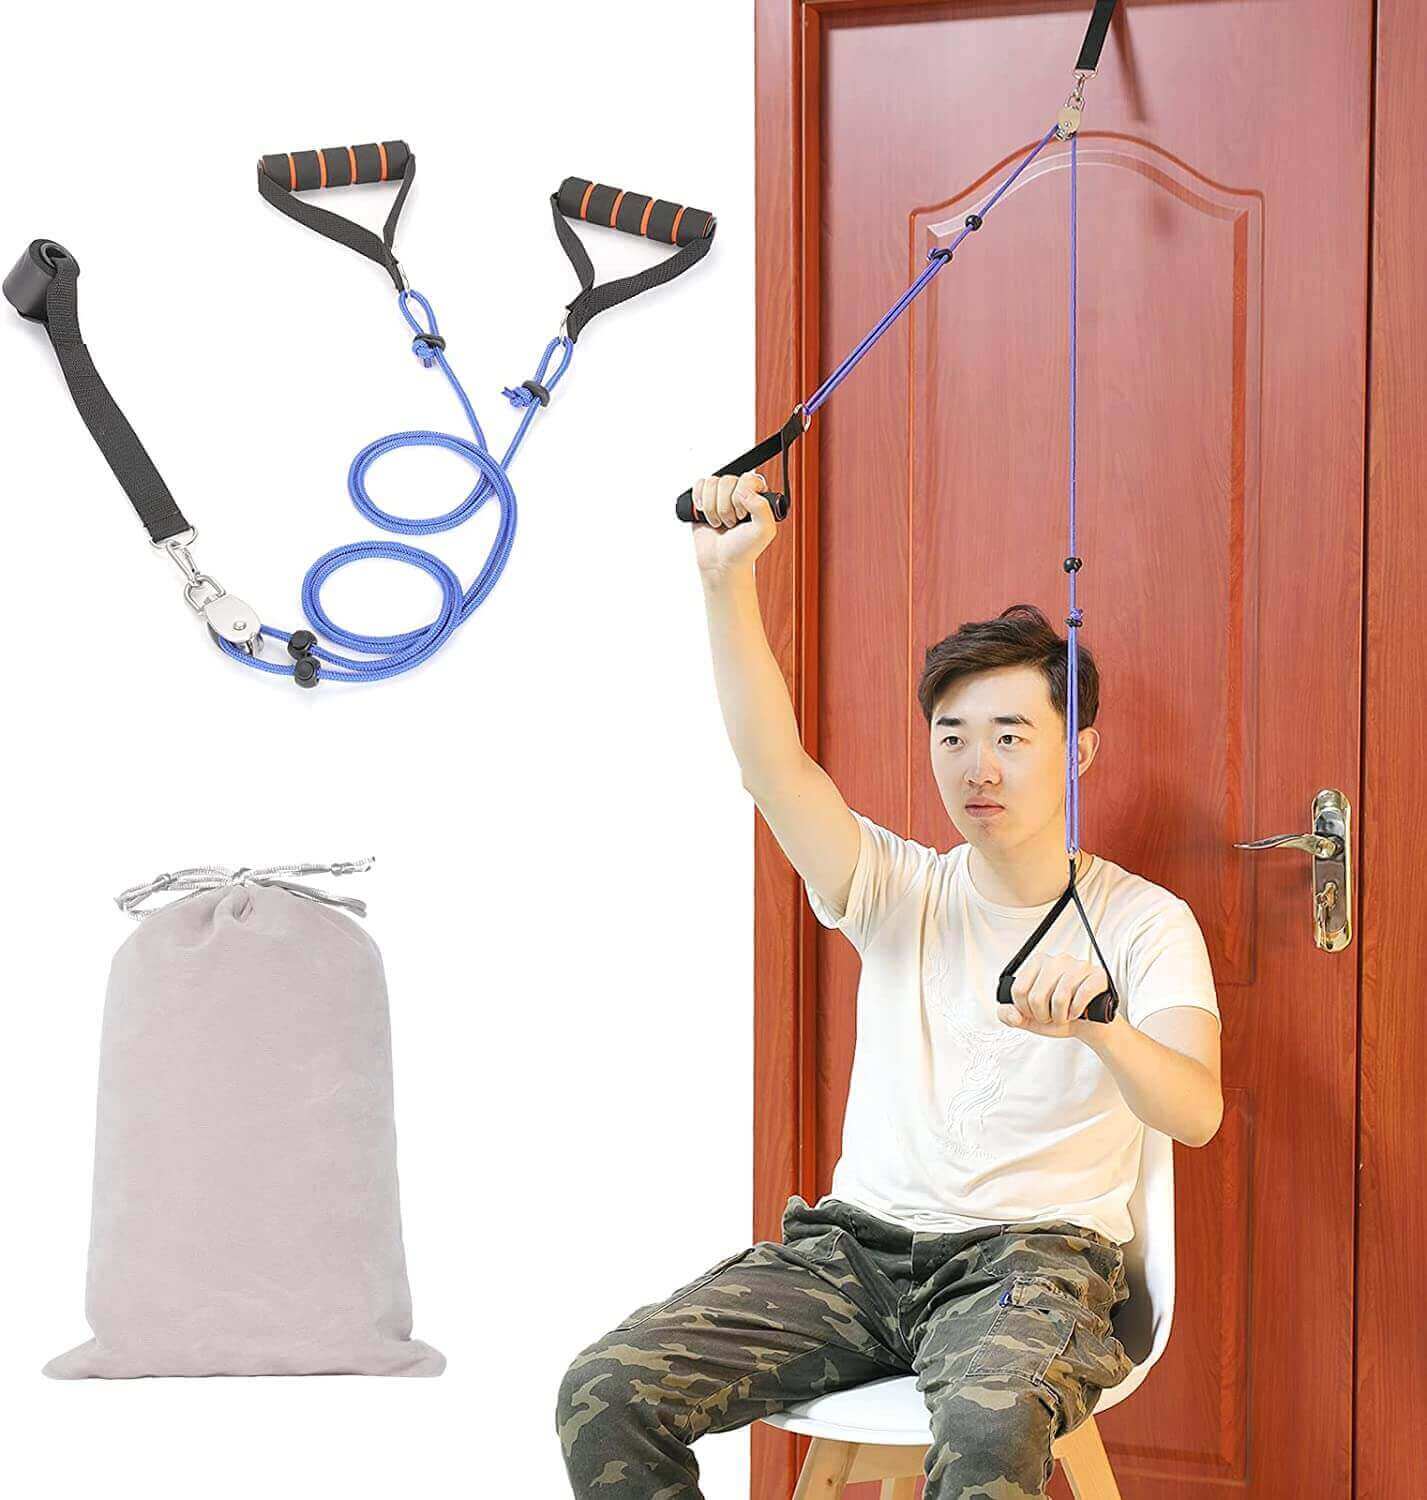 Fanwer Overdoor Shoulder Pulley Exerciser, for Frozen Shoulder Rehab, feature image